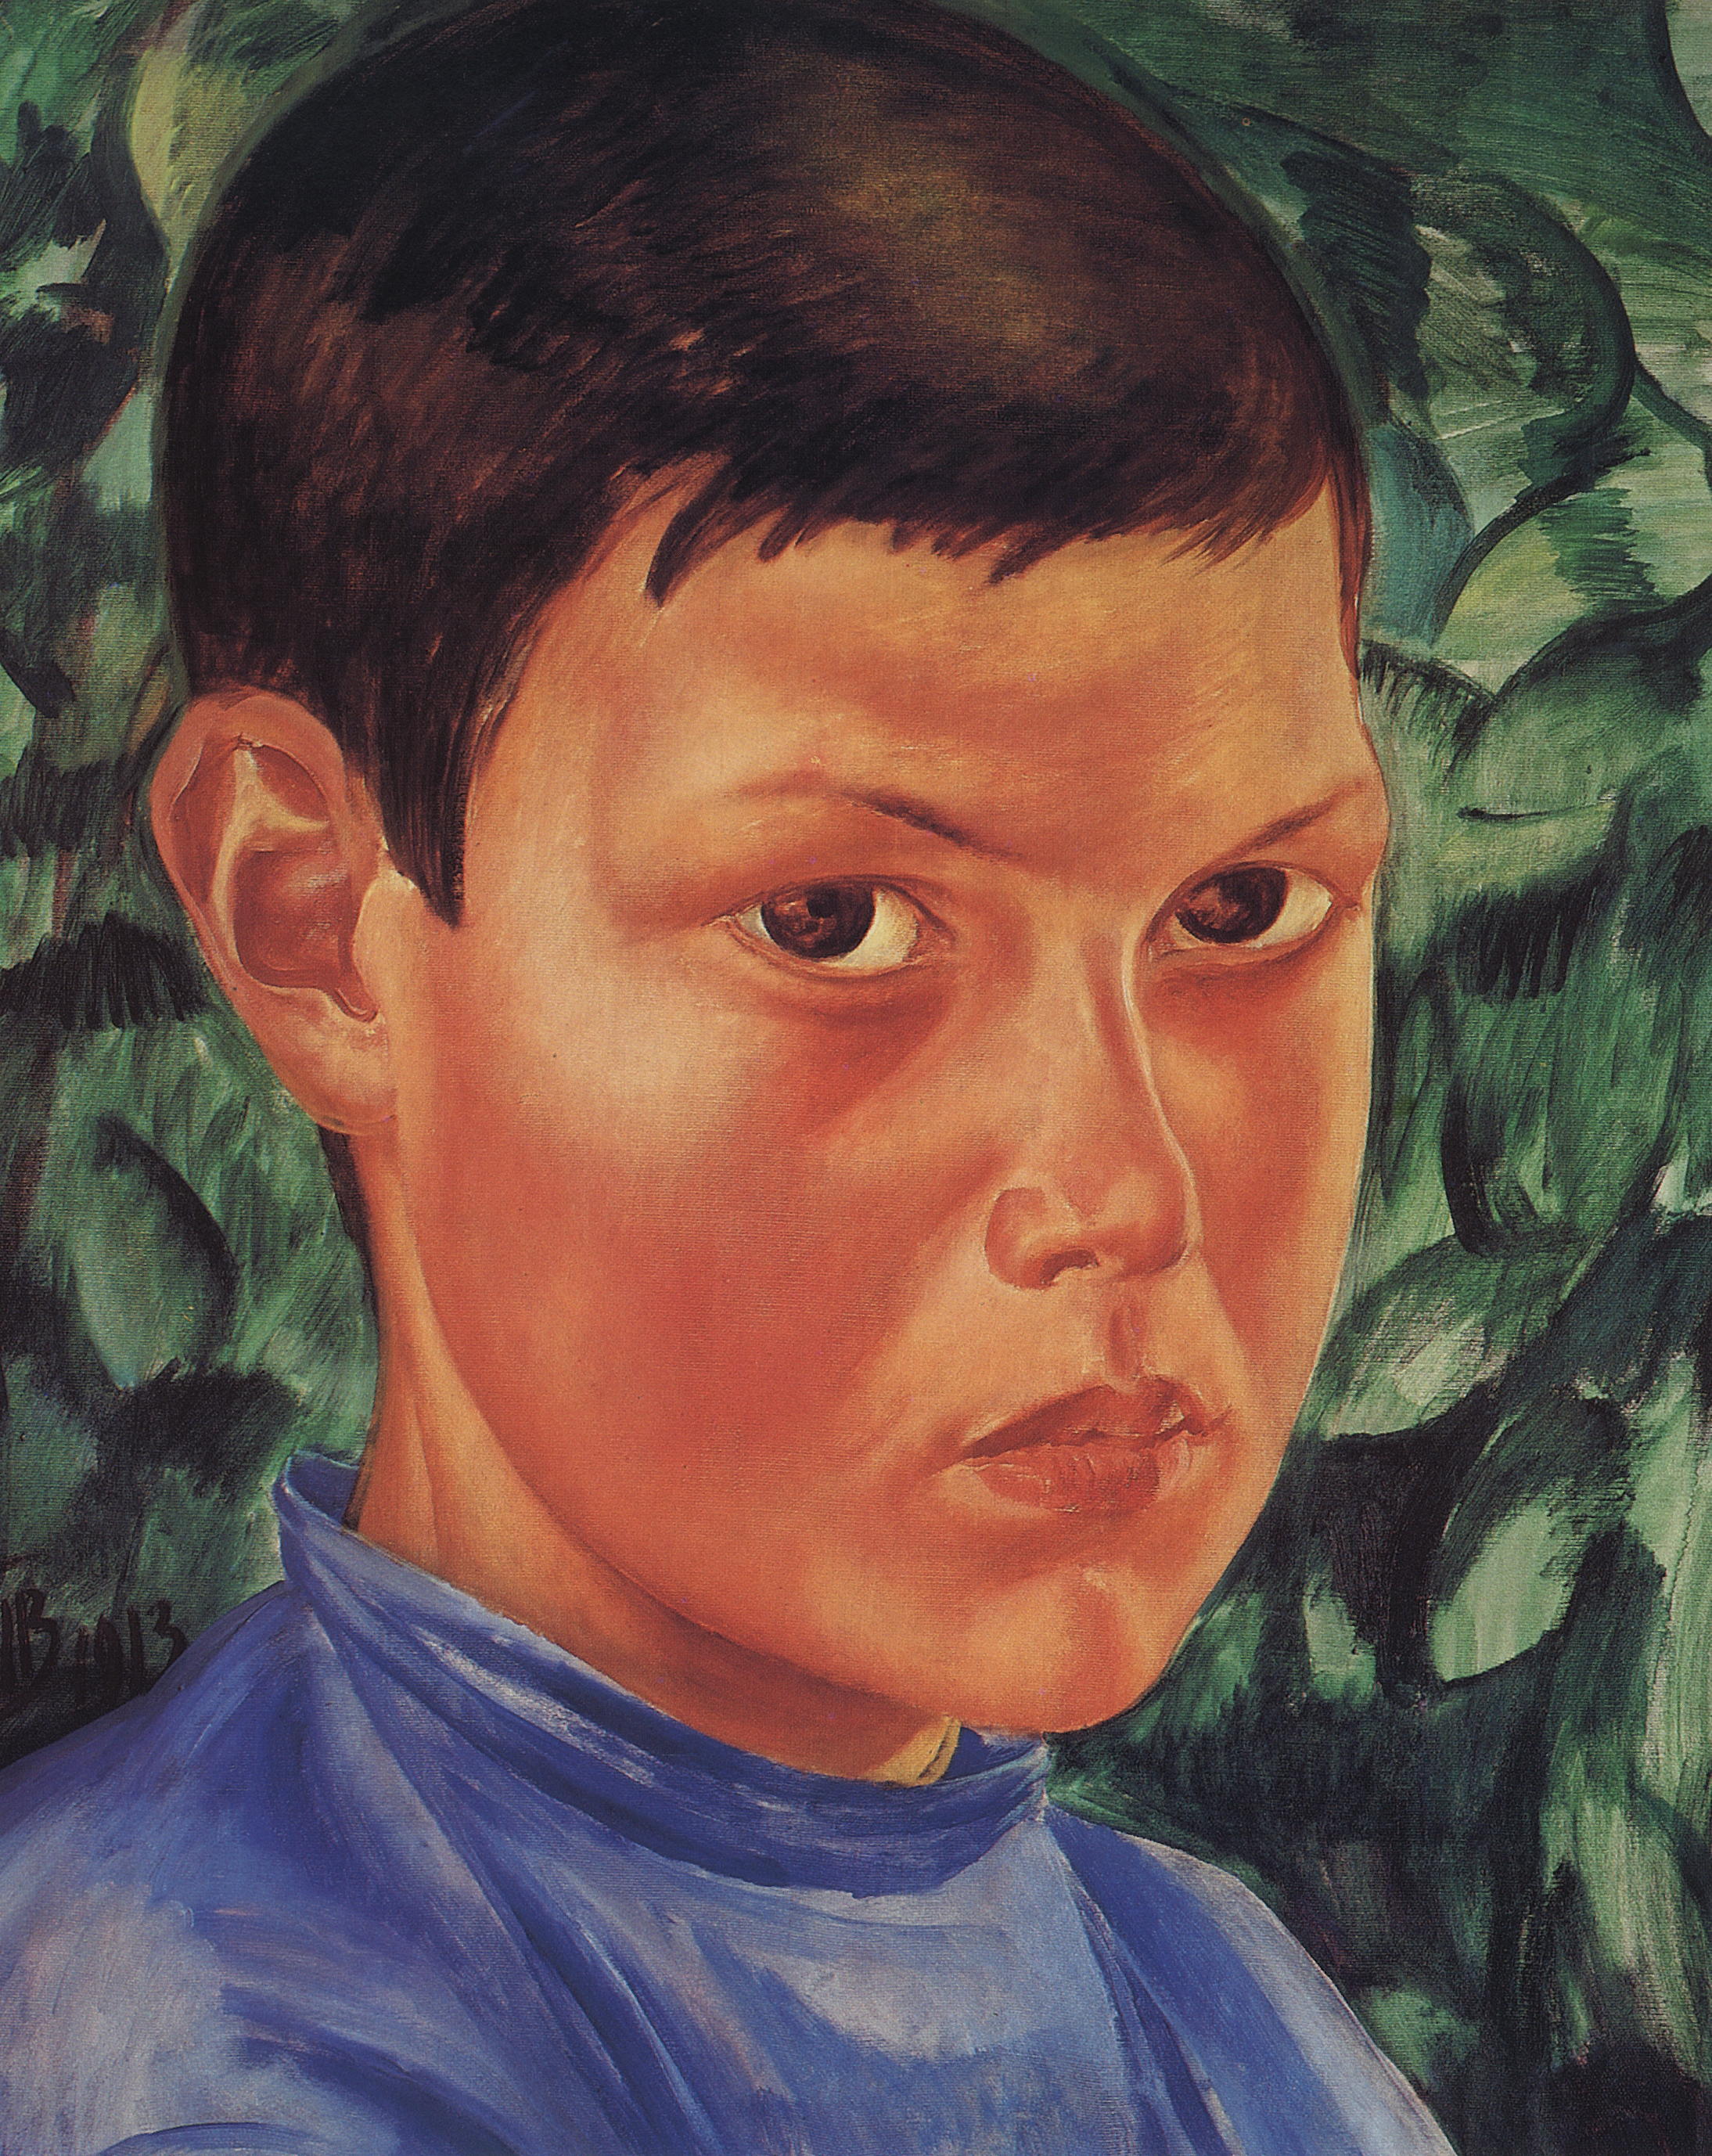 Петров-Водкин. Портрет мальчика. 1913